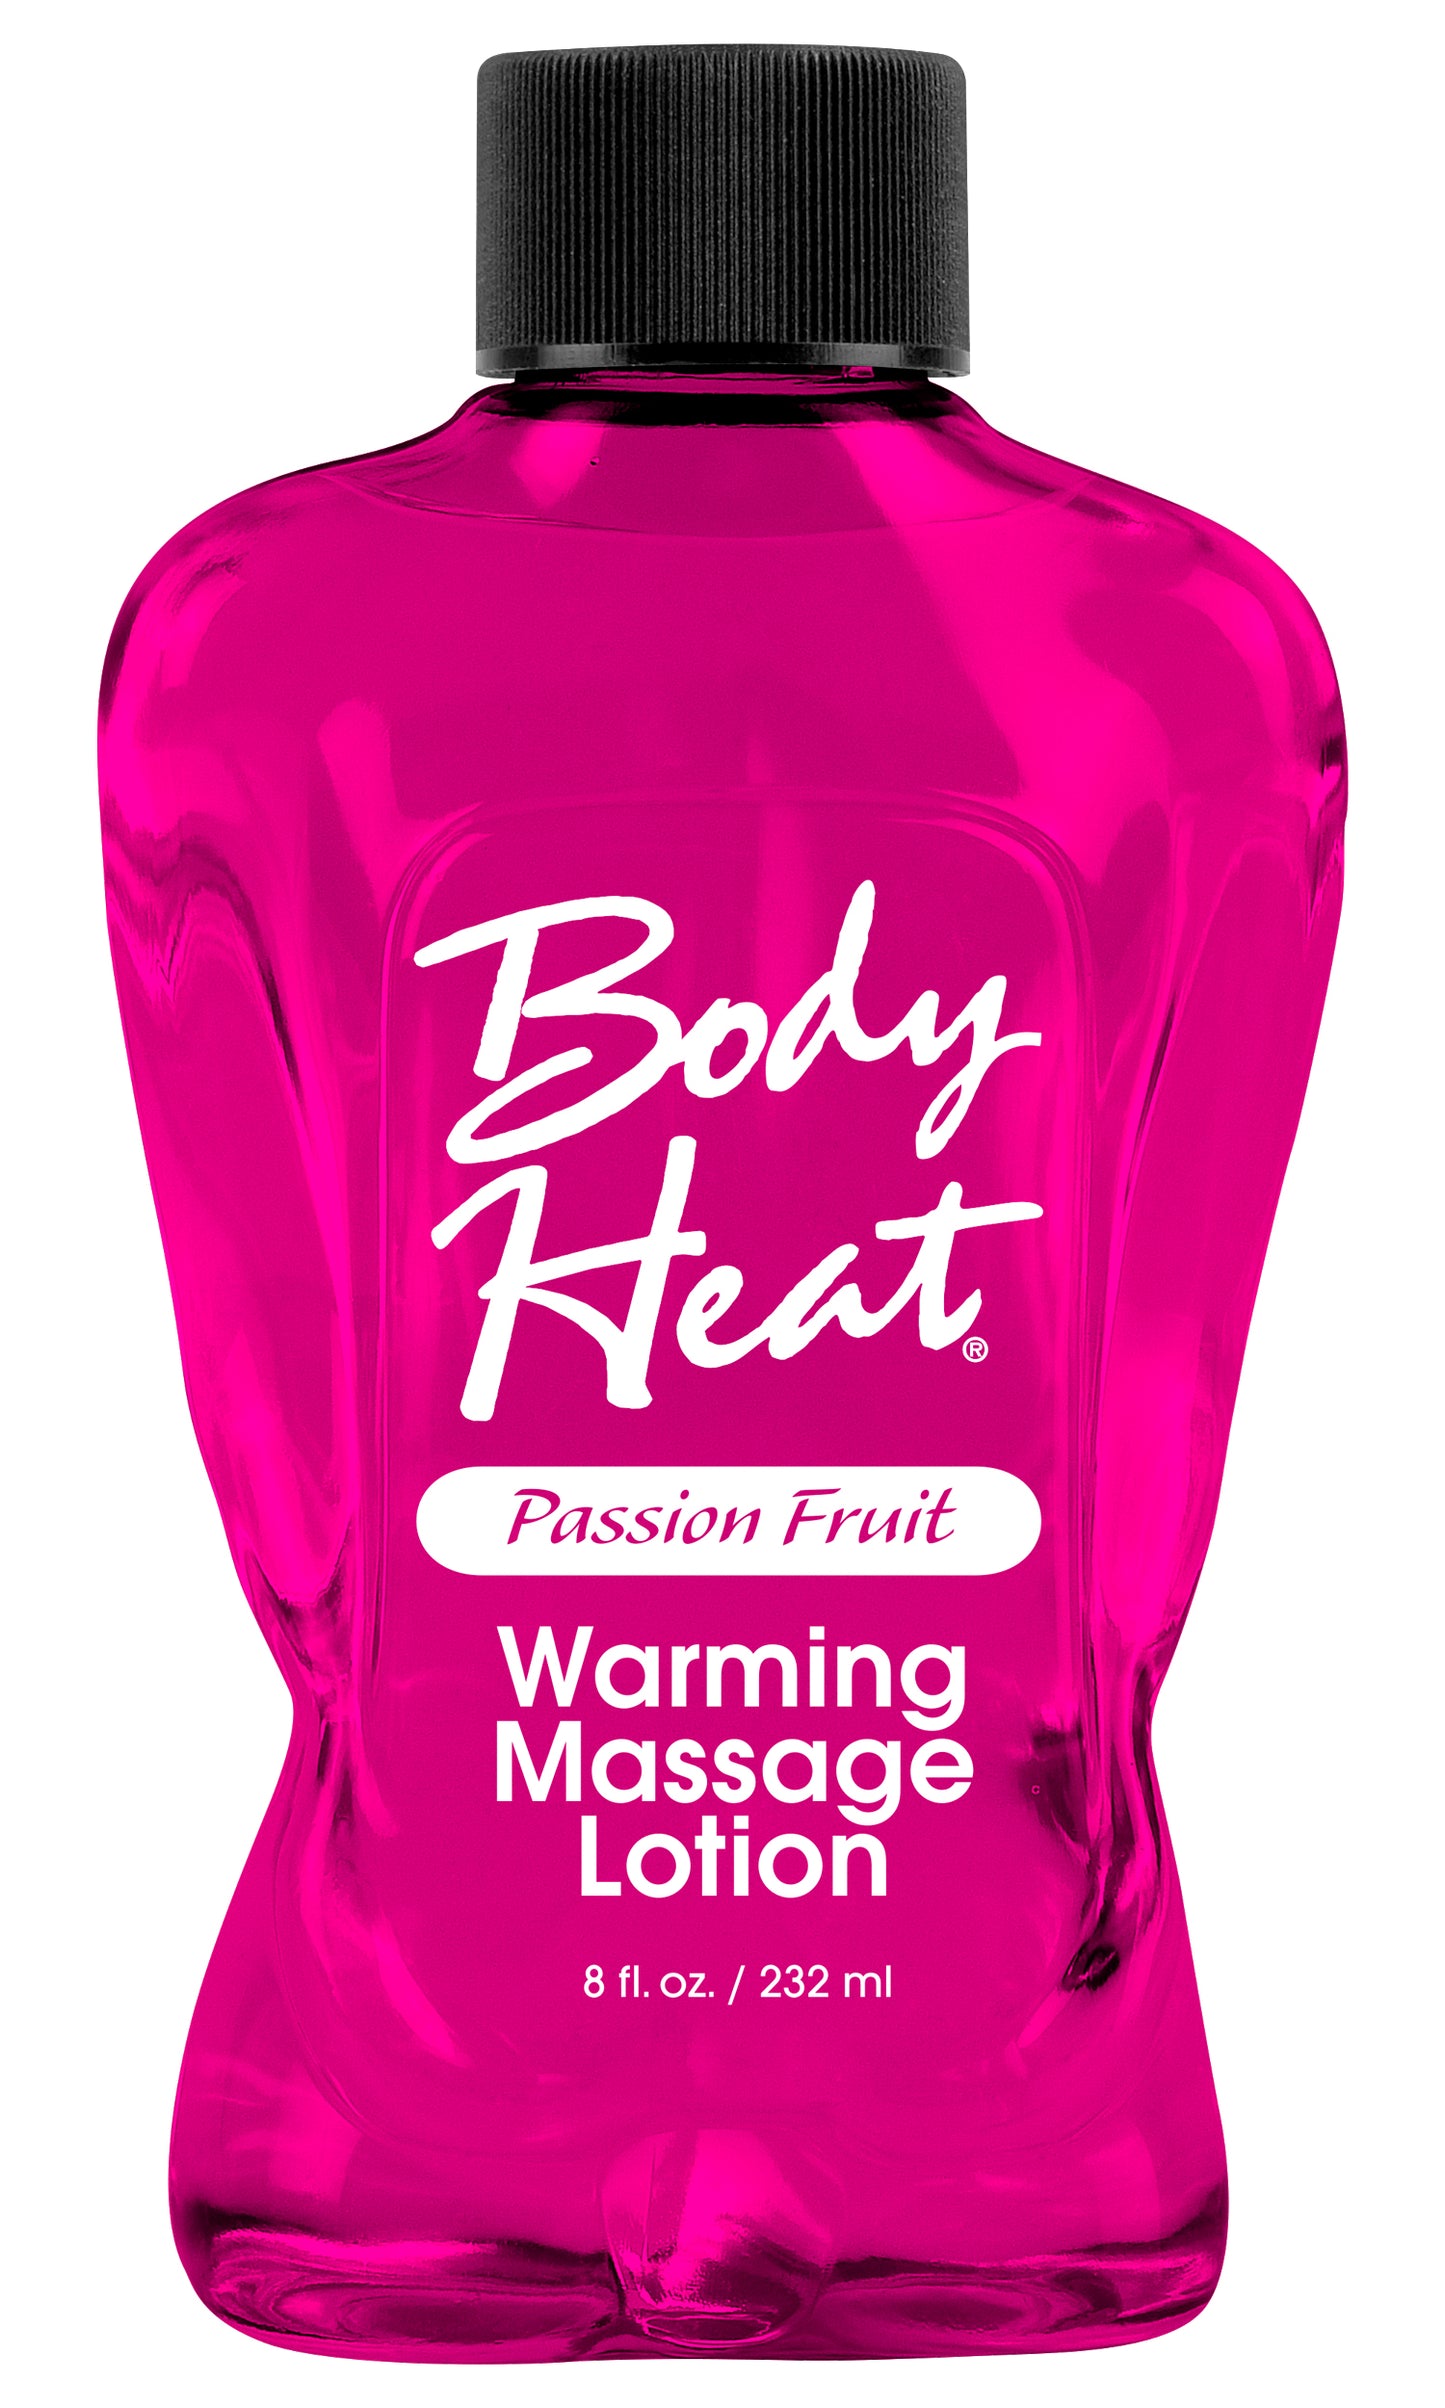 Body Heat Warming Massage Lotion Passion Fruit